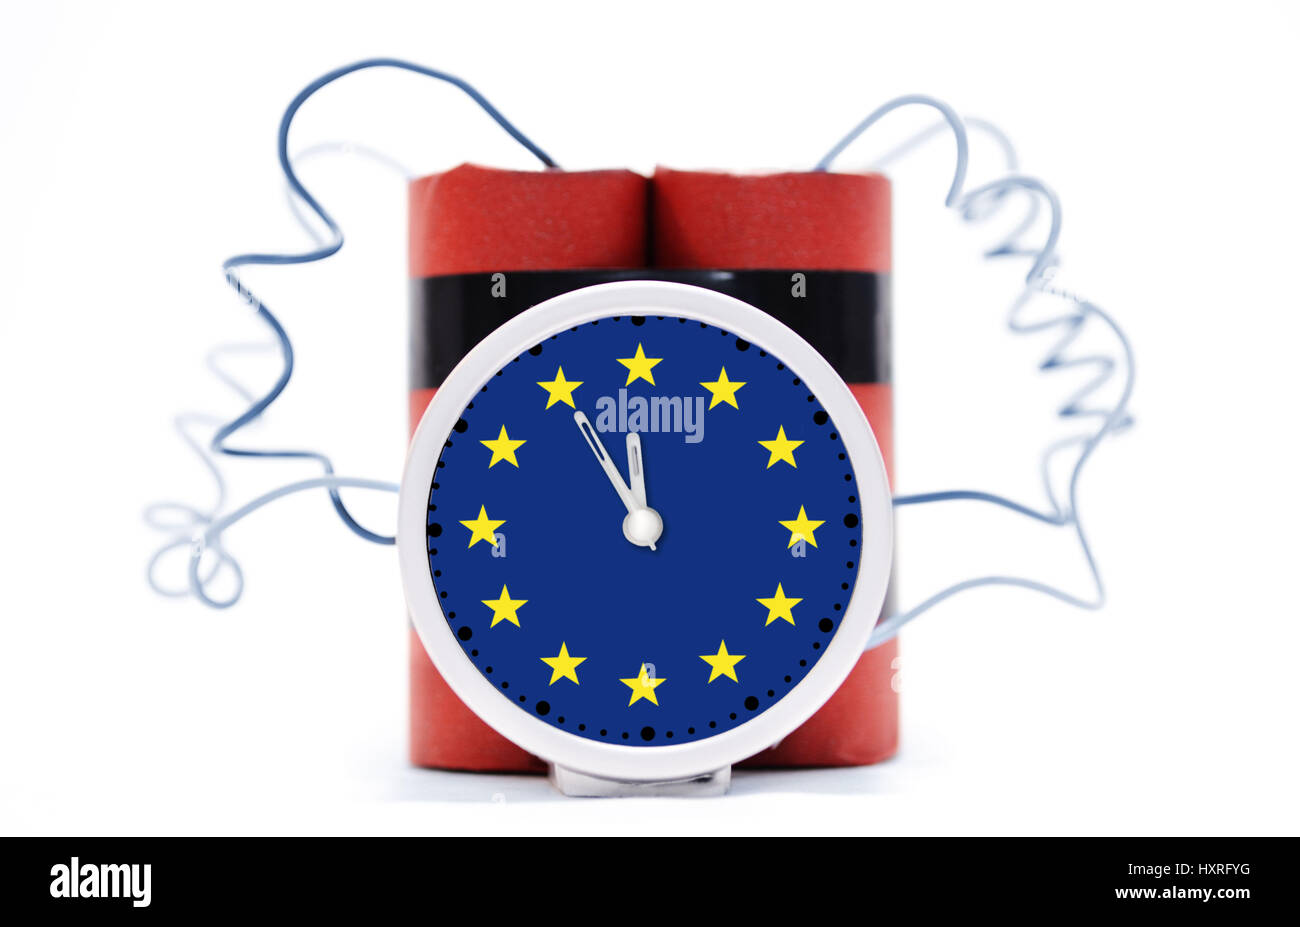 Time bomb with EU sign, Zeitbombe mit EU-Zeichen Stock Photo